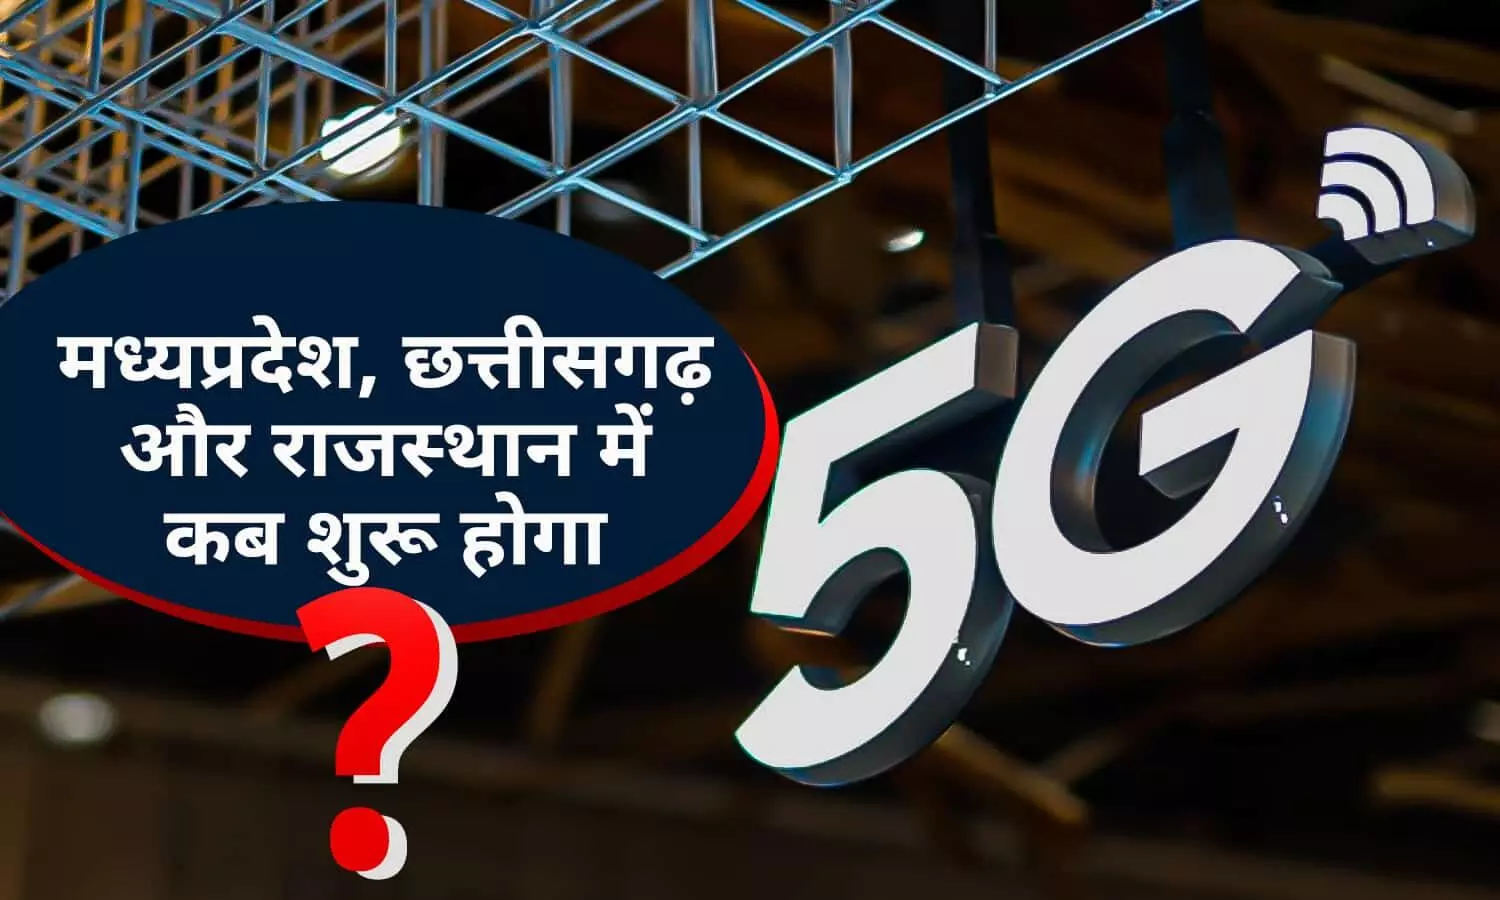 5G Internet Service को लेकर आई लेटेस्ट जानकारी!  MP, CG और राजस्थान में कब शुरू होगी 5G सेवा? बिन देर किए फटाफट जाने